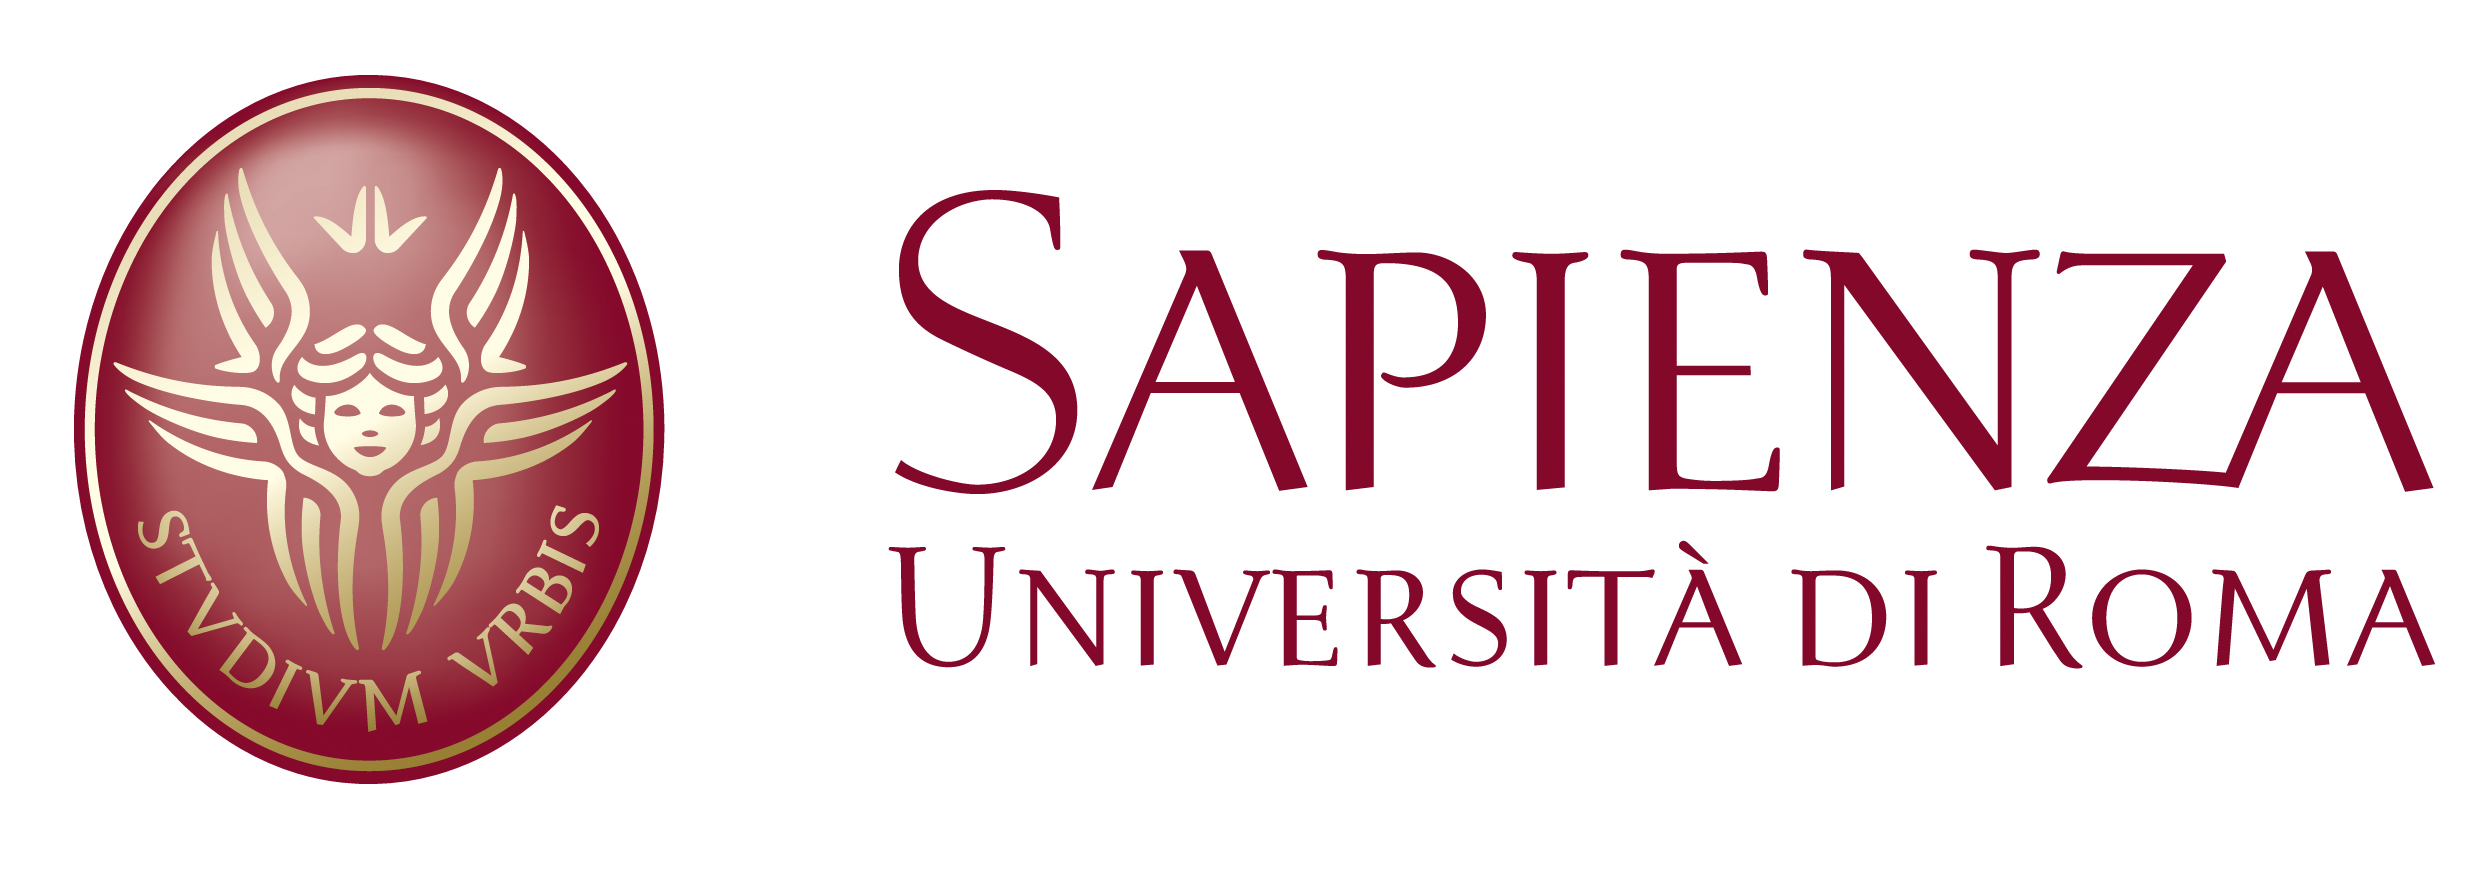 Sapienza Università di Roma Logo photo - 1